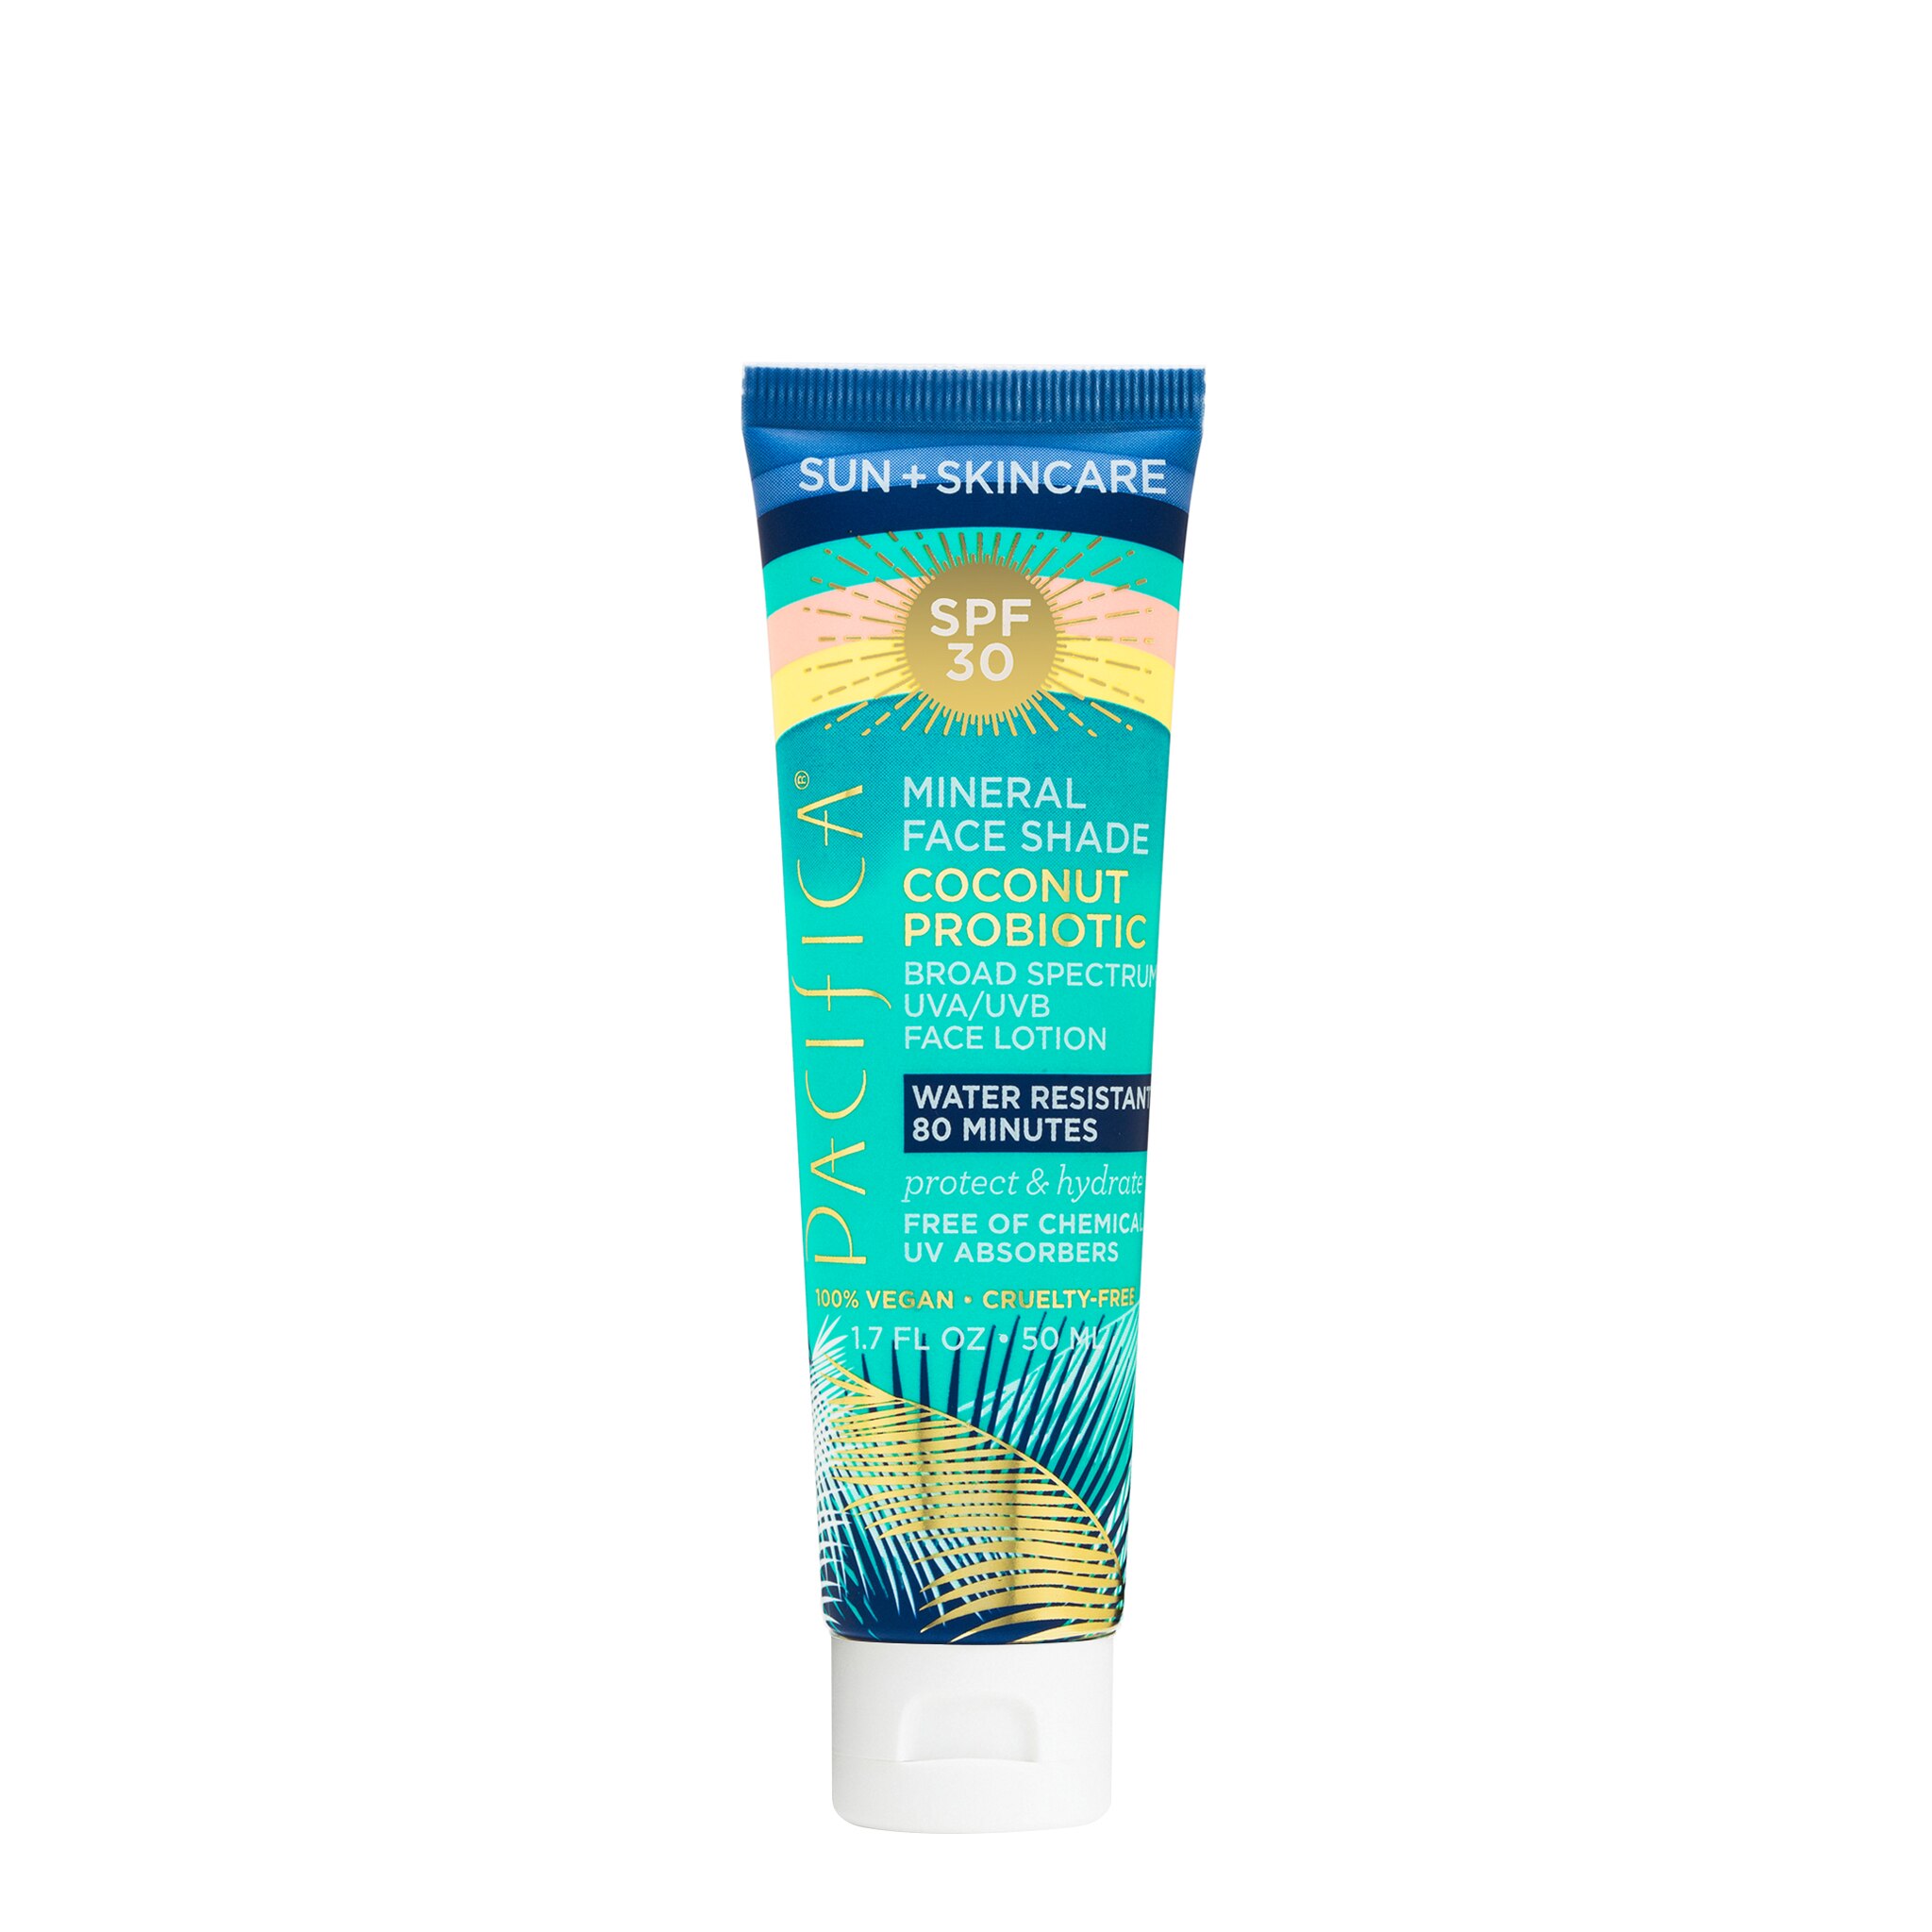 Pacifica Sun + Skincare Mineral Face Shade Coconut Probiotic SPF 30, 1.7 OZ